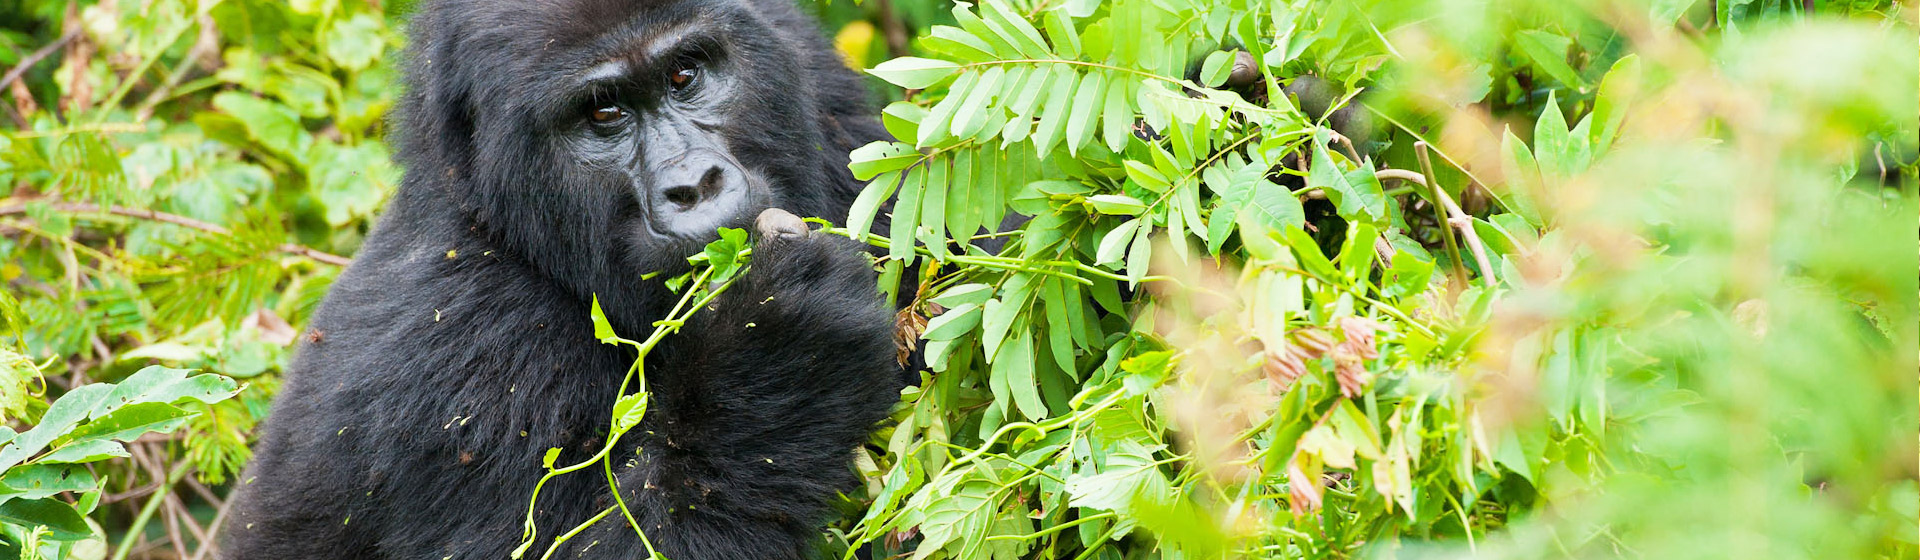 4 Days Uganda Gorilla Trekking